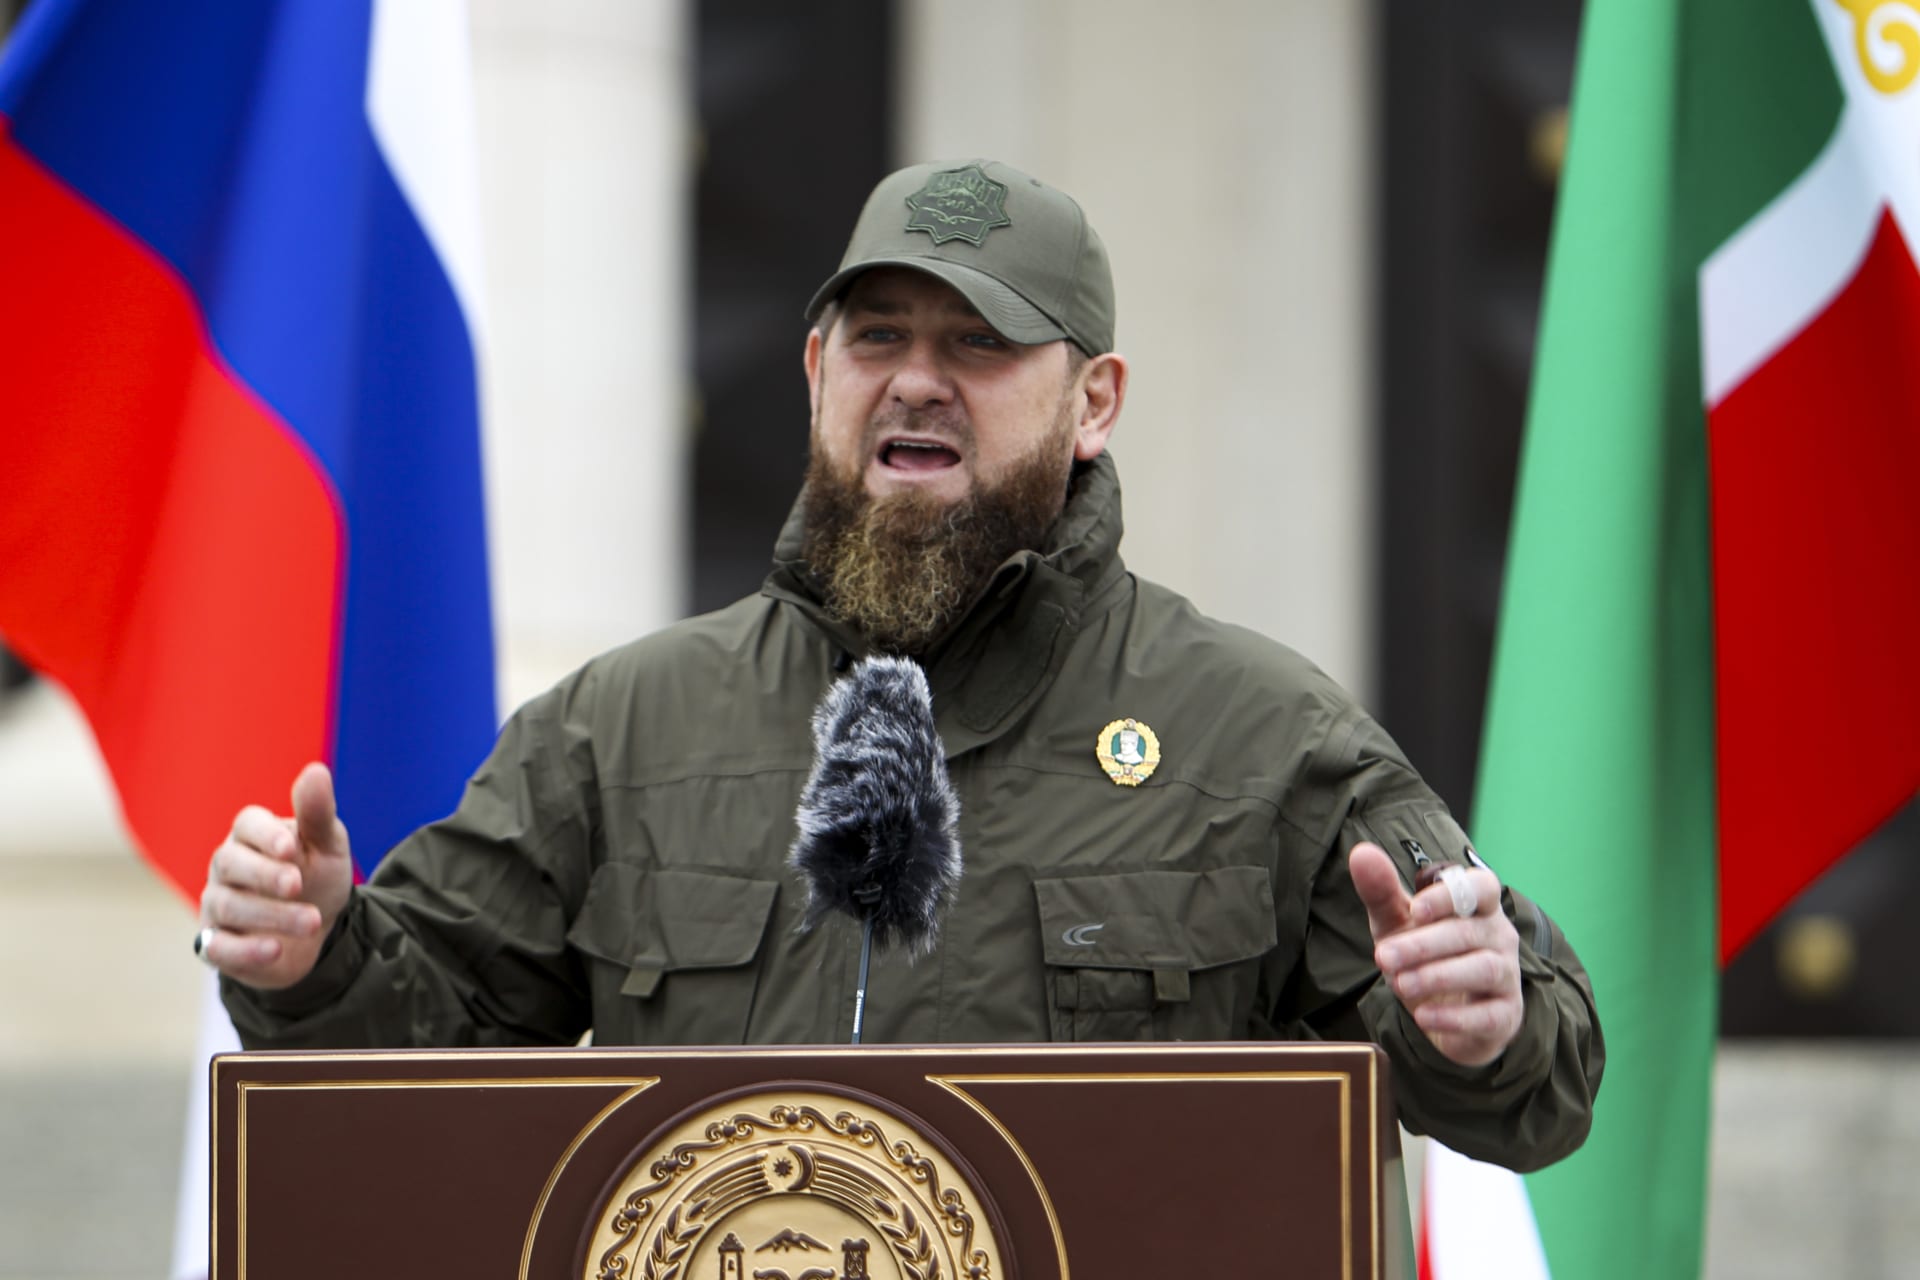 Čečenský vůdce Ramzan Kadyrov vzkázal americkému podnikateli, že proti Putinovi nemá šanci.